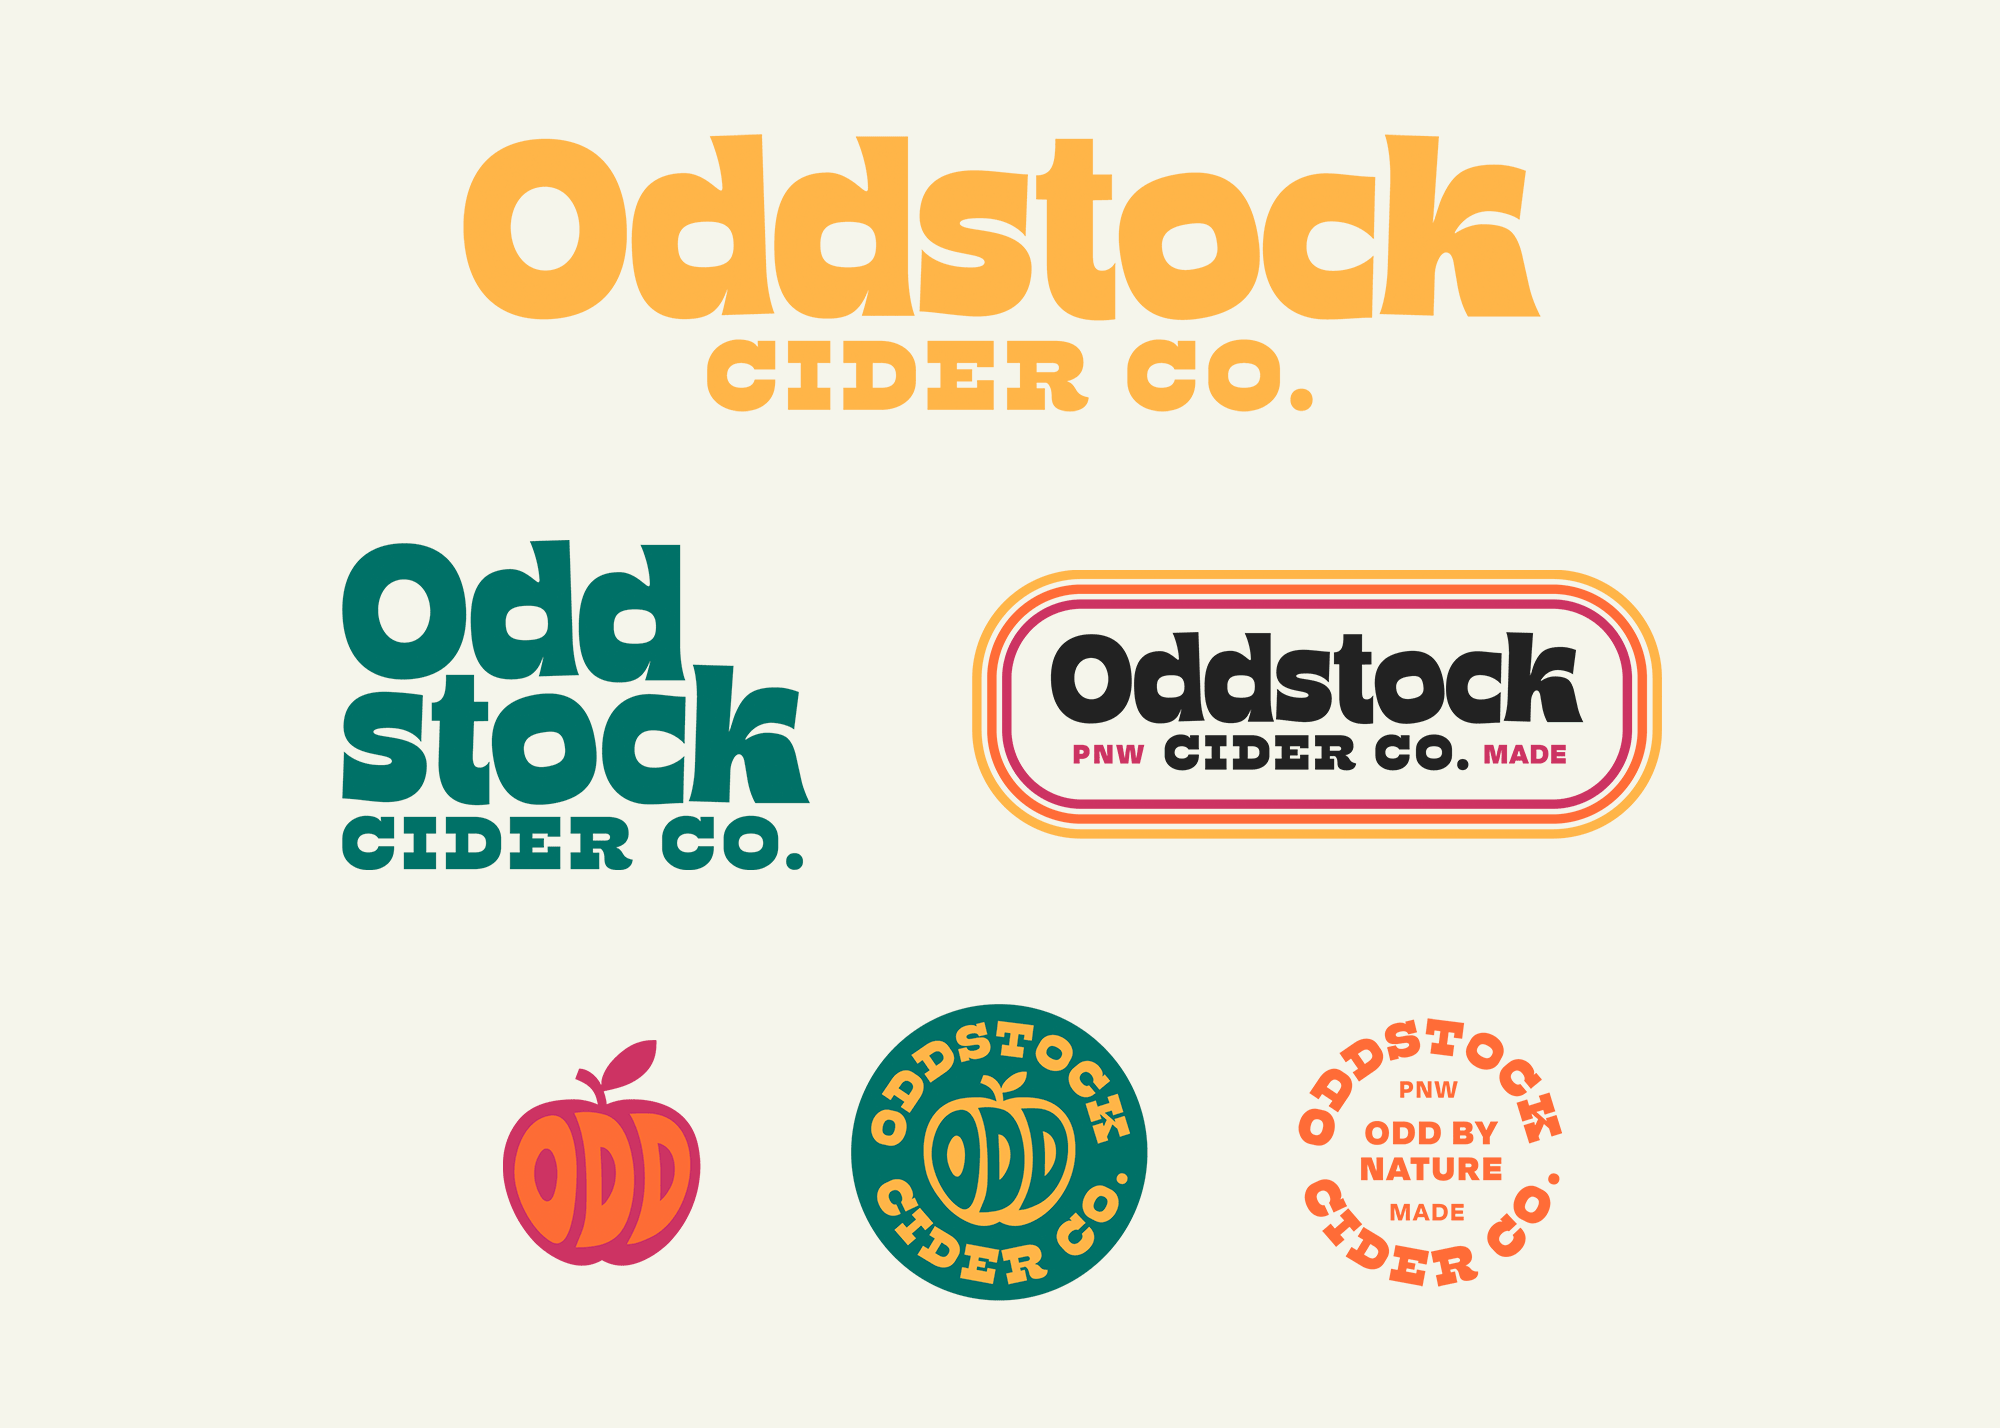 oddstock-logos.png